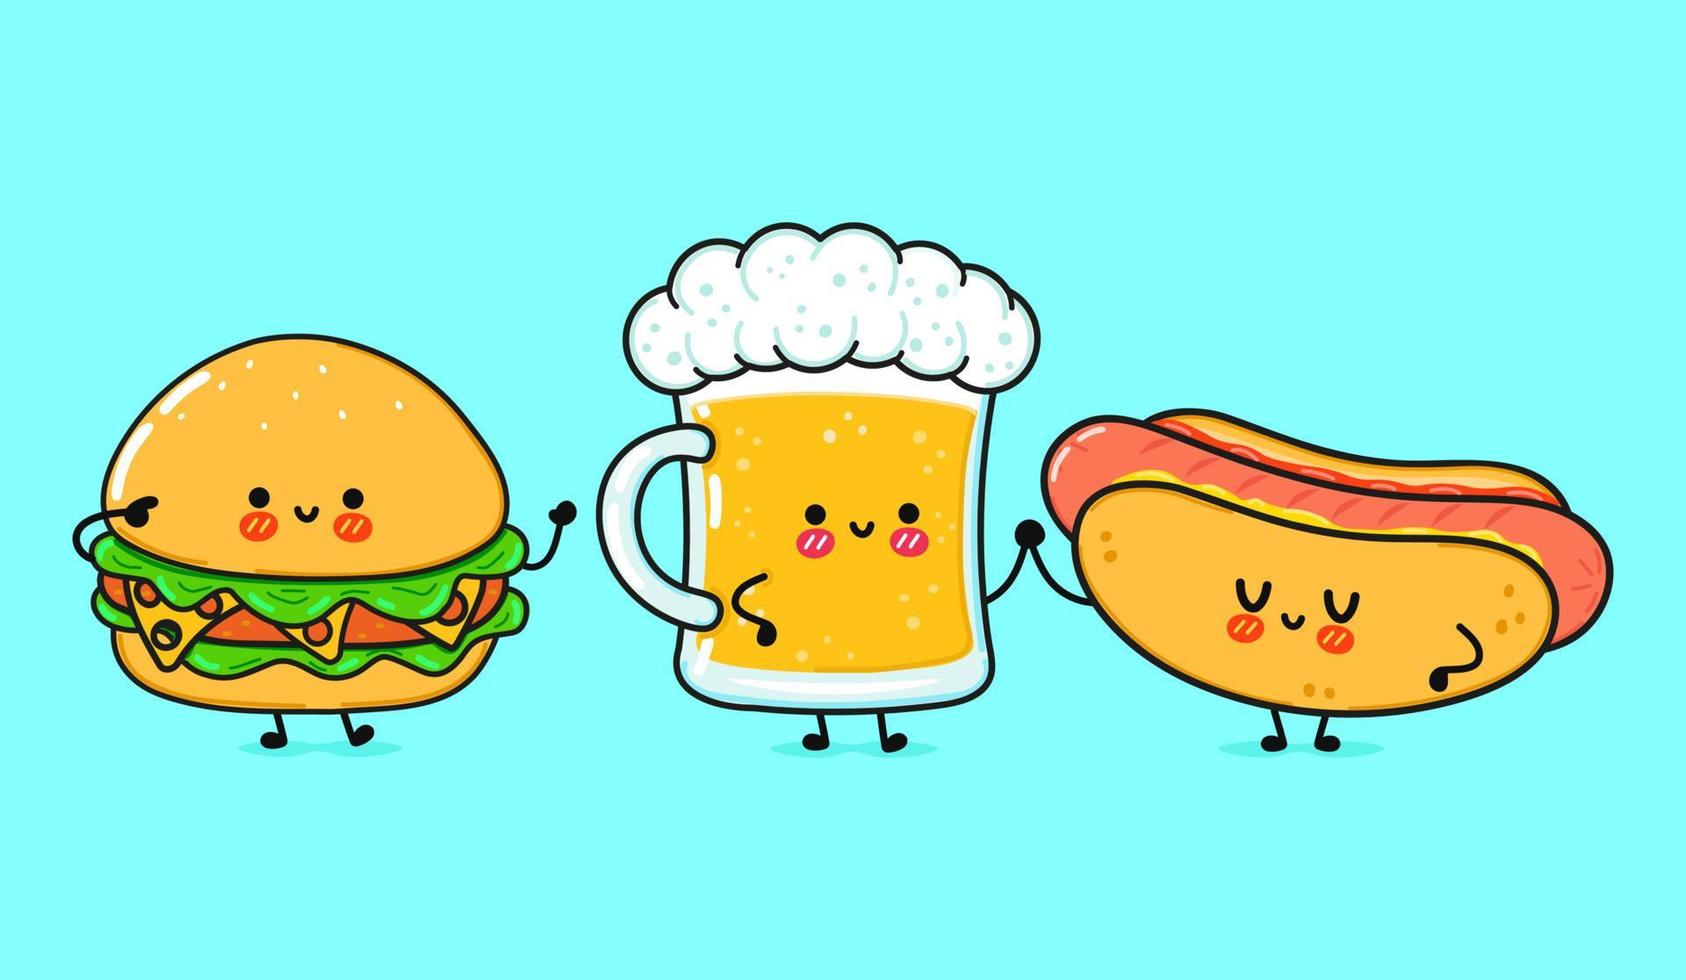 süßes, lustiges fröhliches glas bier, hot dog und hamburger. Vektor handgezeichnete kawaii Zeichentrickfiguren, Illustrationssymbol. lustiges karikaturglas bier hotdog und hamburger maskottchen freunde konzept